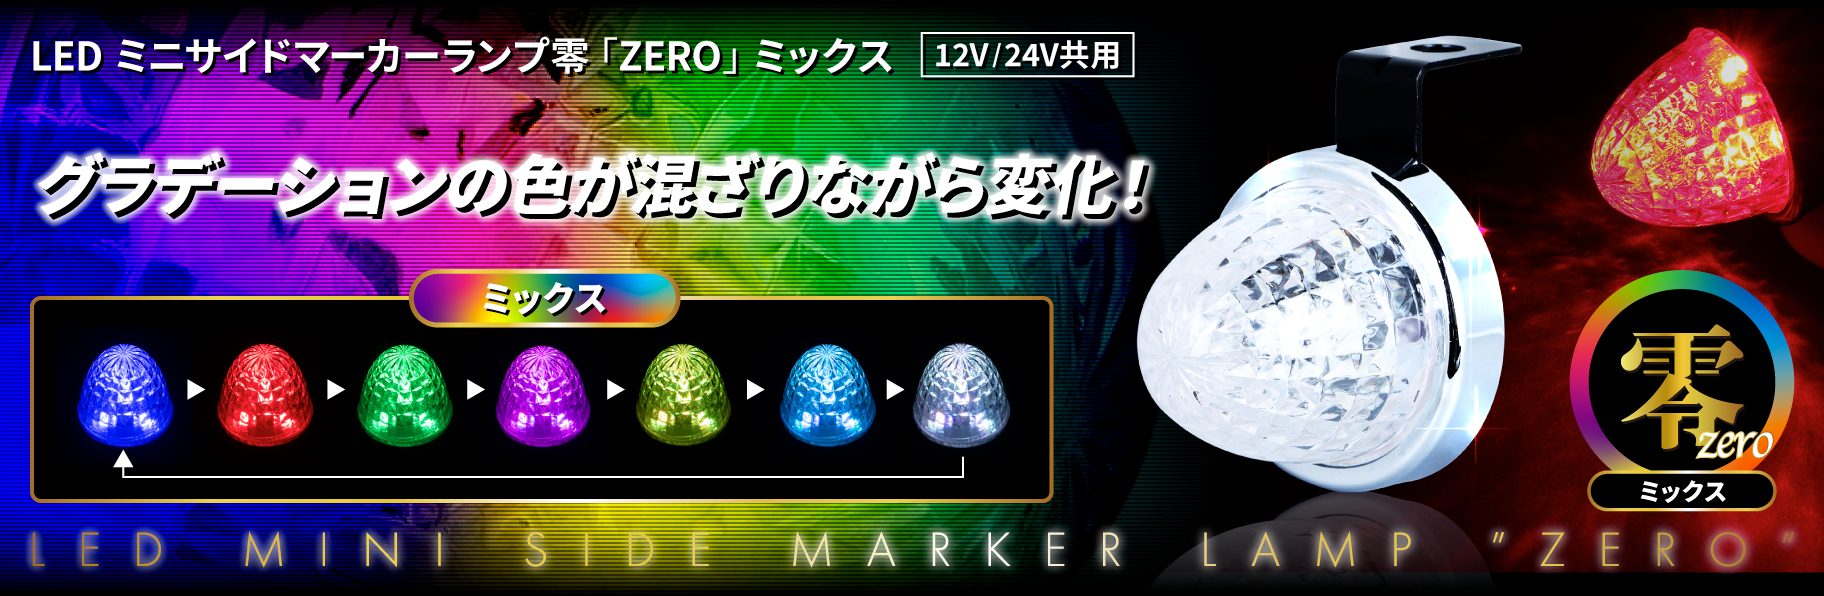 LED ミニサイドマーカーランプ 零（ZERO）ミックス | 株式会社ジェット 